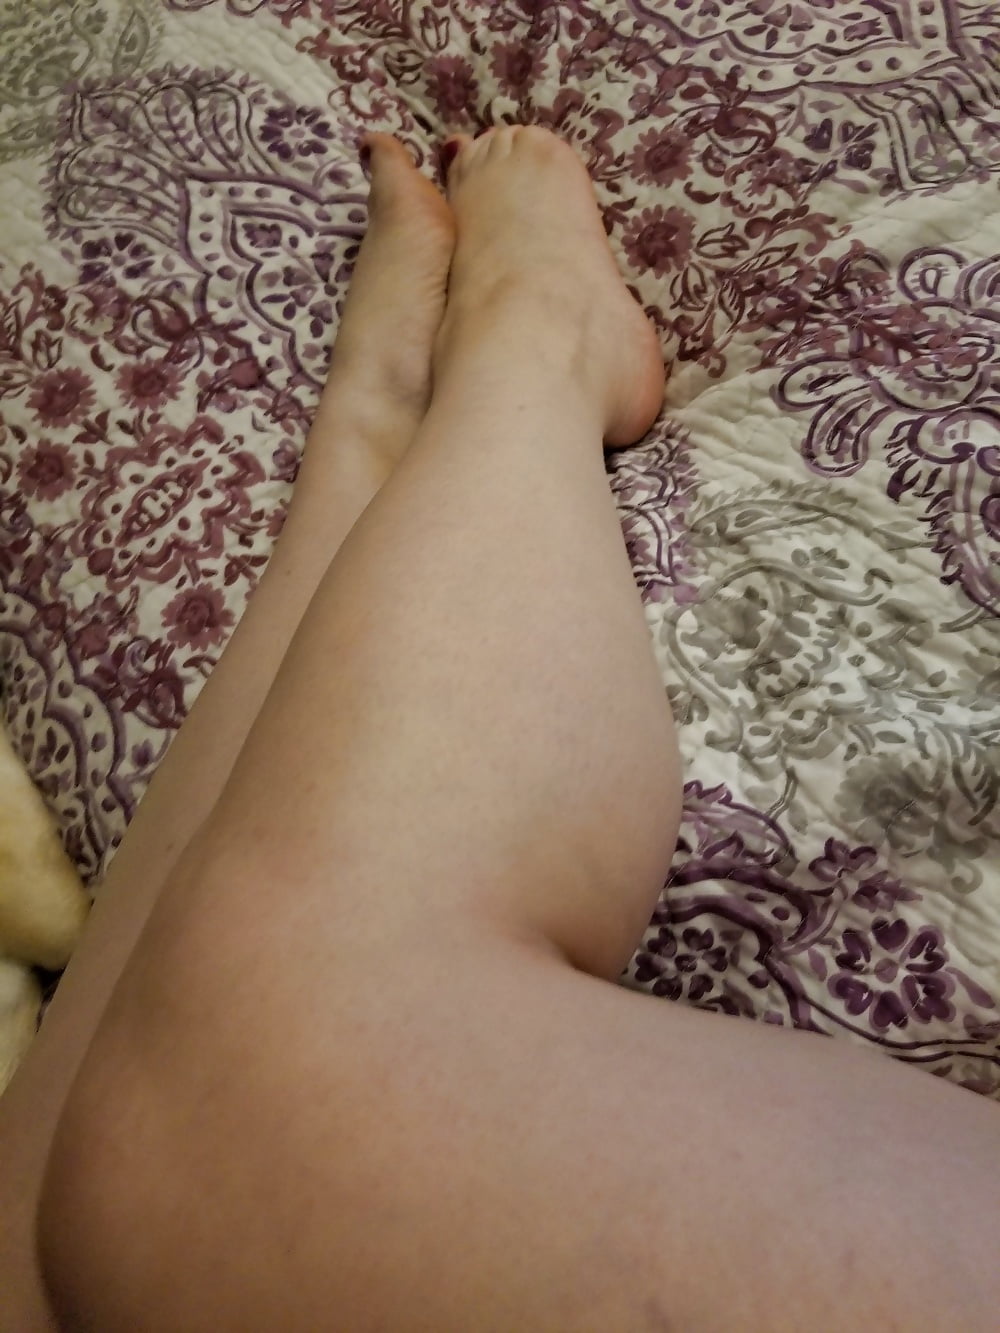 Füße, Beine, Fersen und Stiefel der süßen sexy Hausfrau
 #106605642